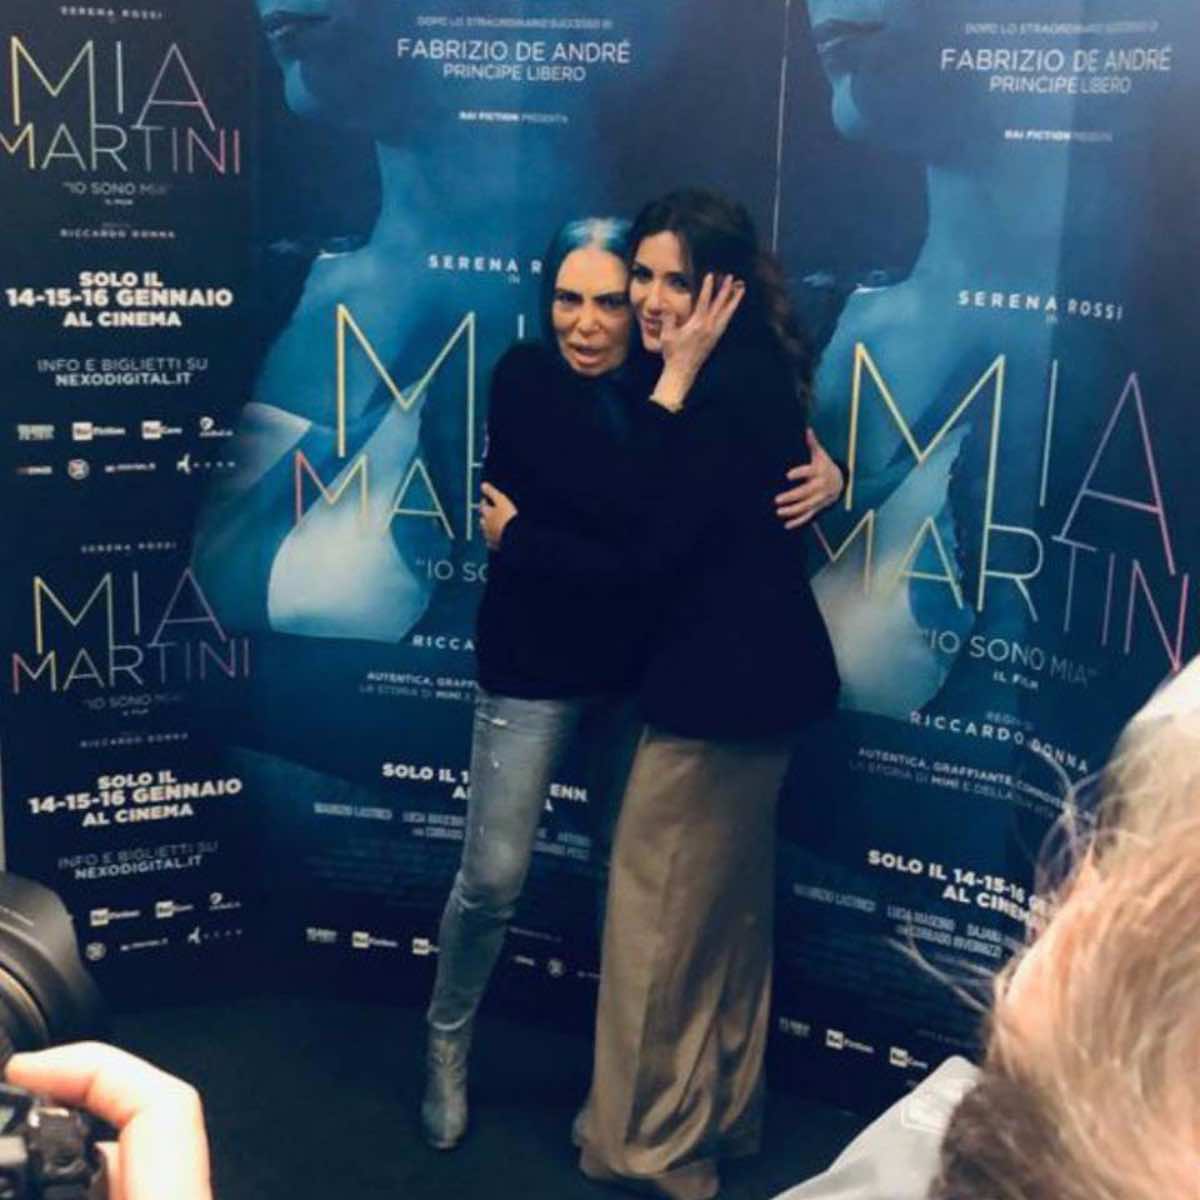 Sanremo, Serena Rossi 'riporterà' Mia Martini all'Ariston 